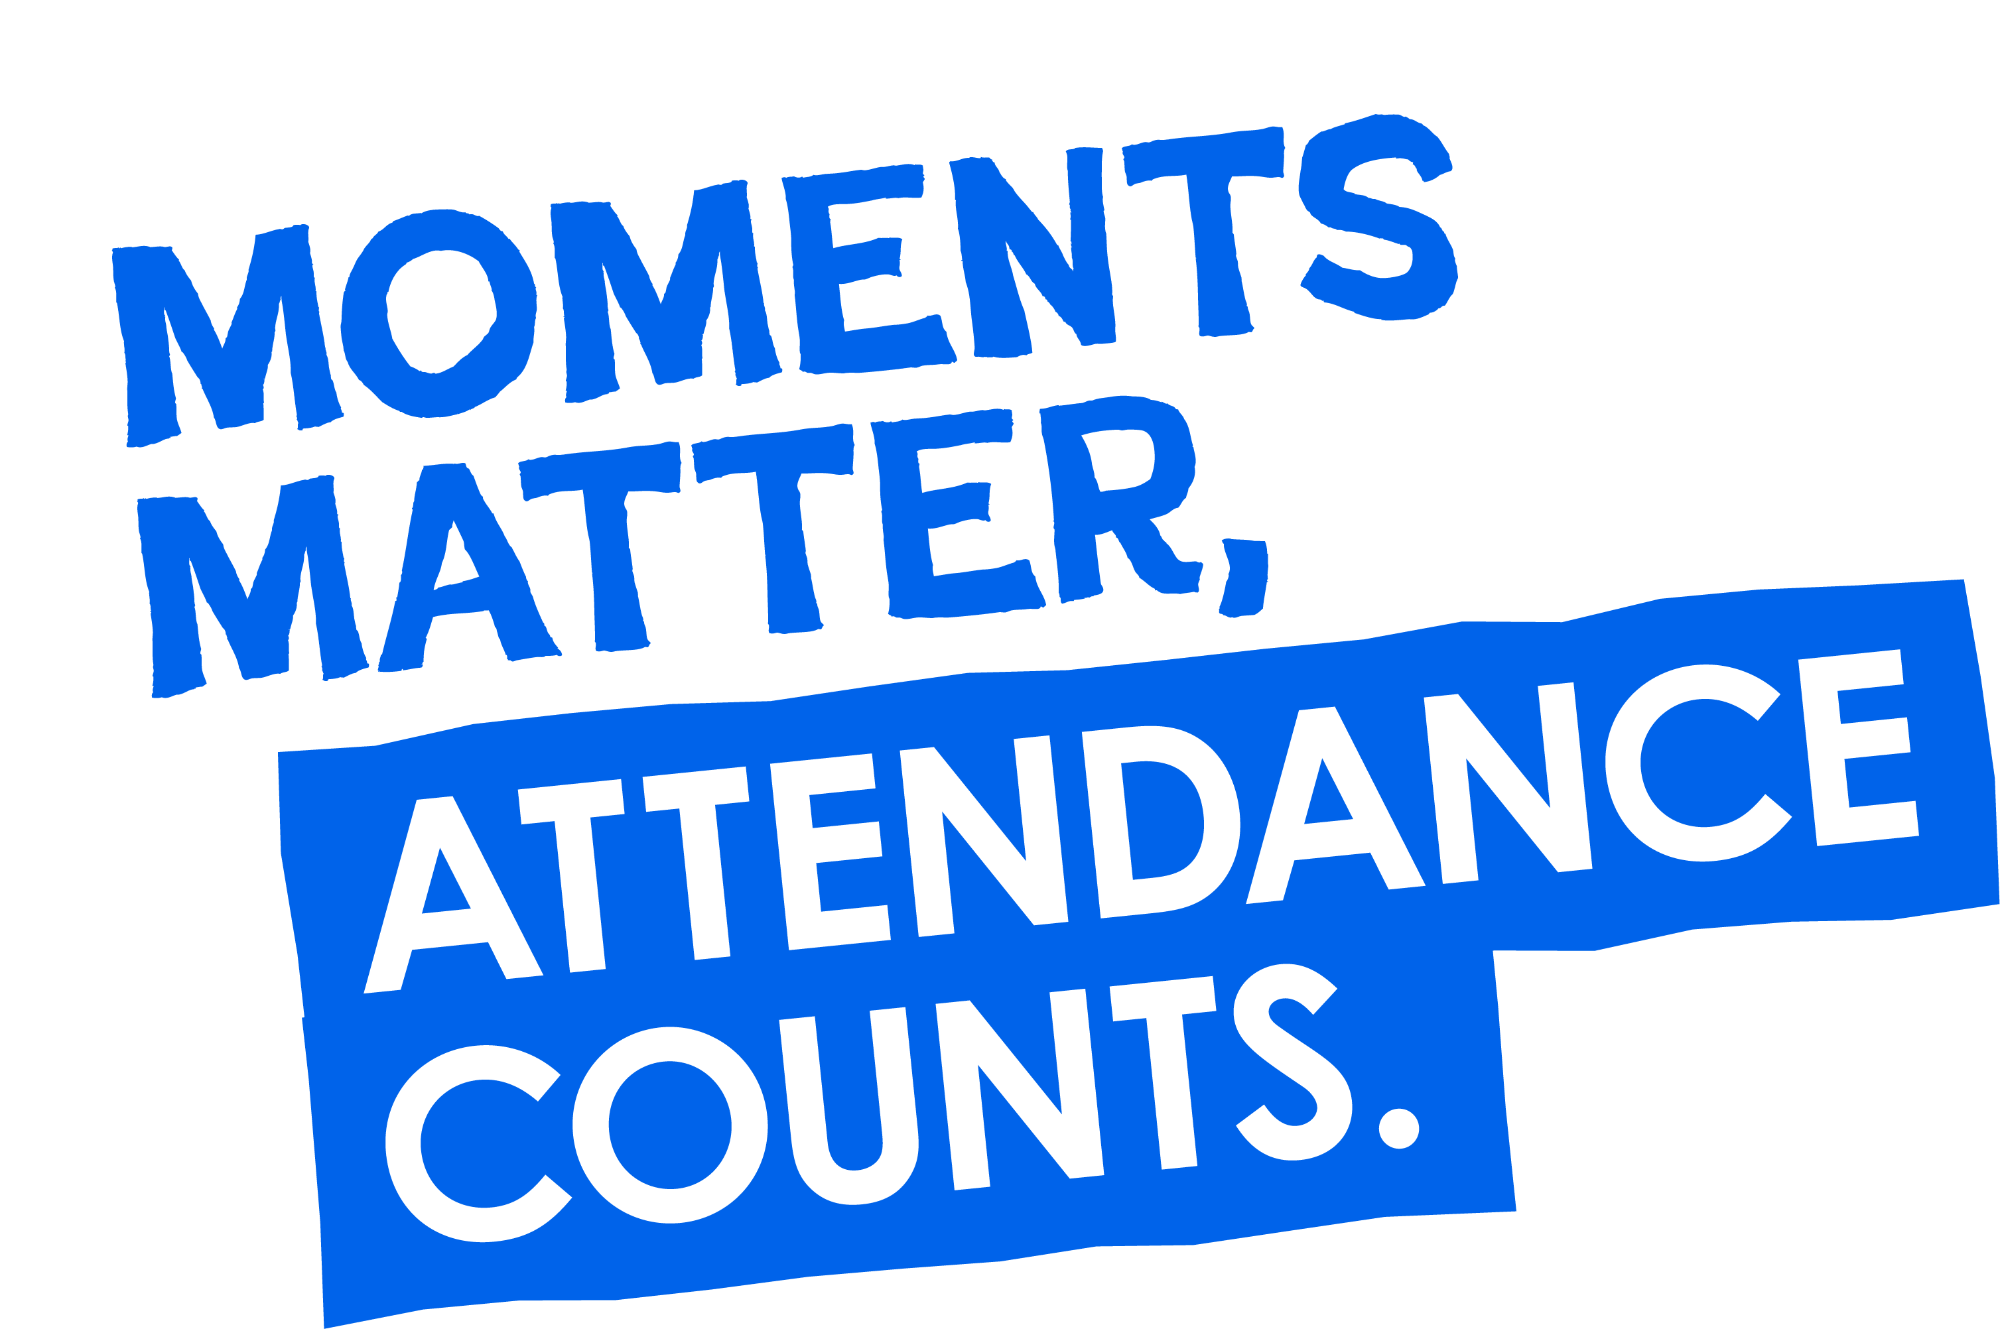 Attendance Matters 